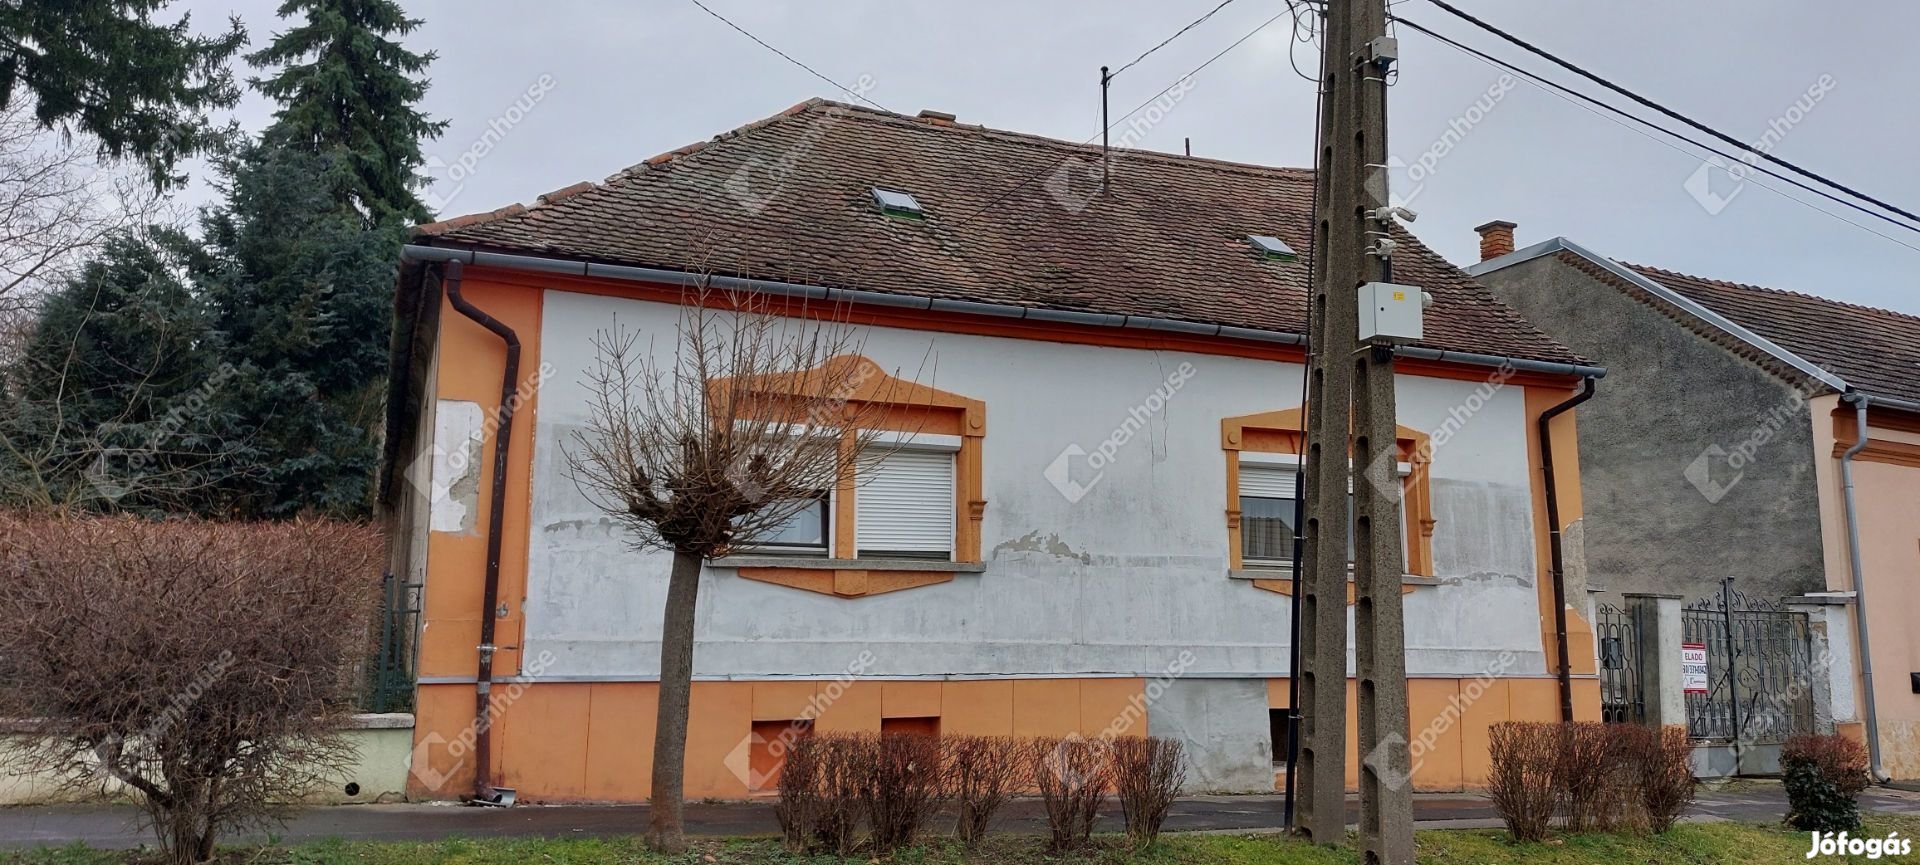 Vasvár, eladó családi ház